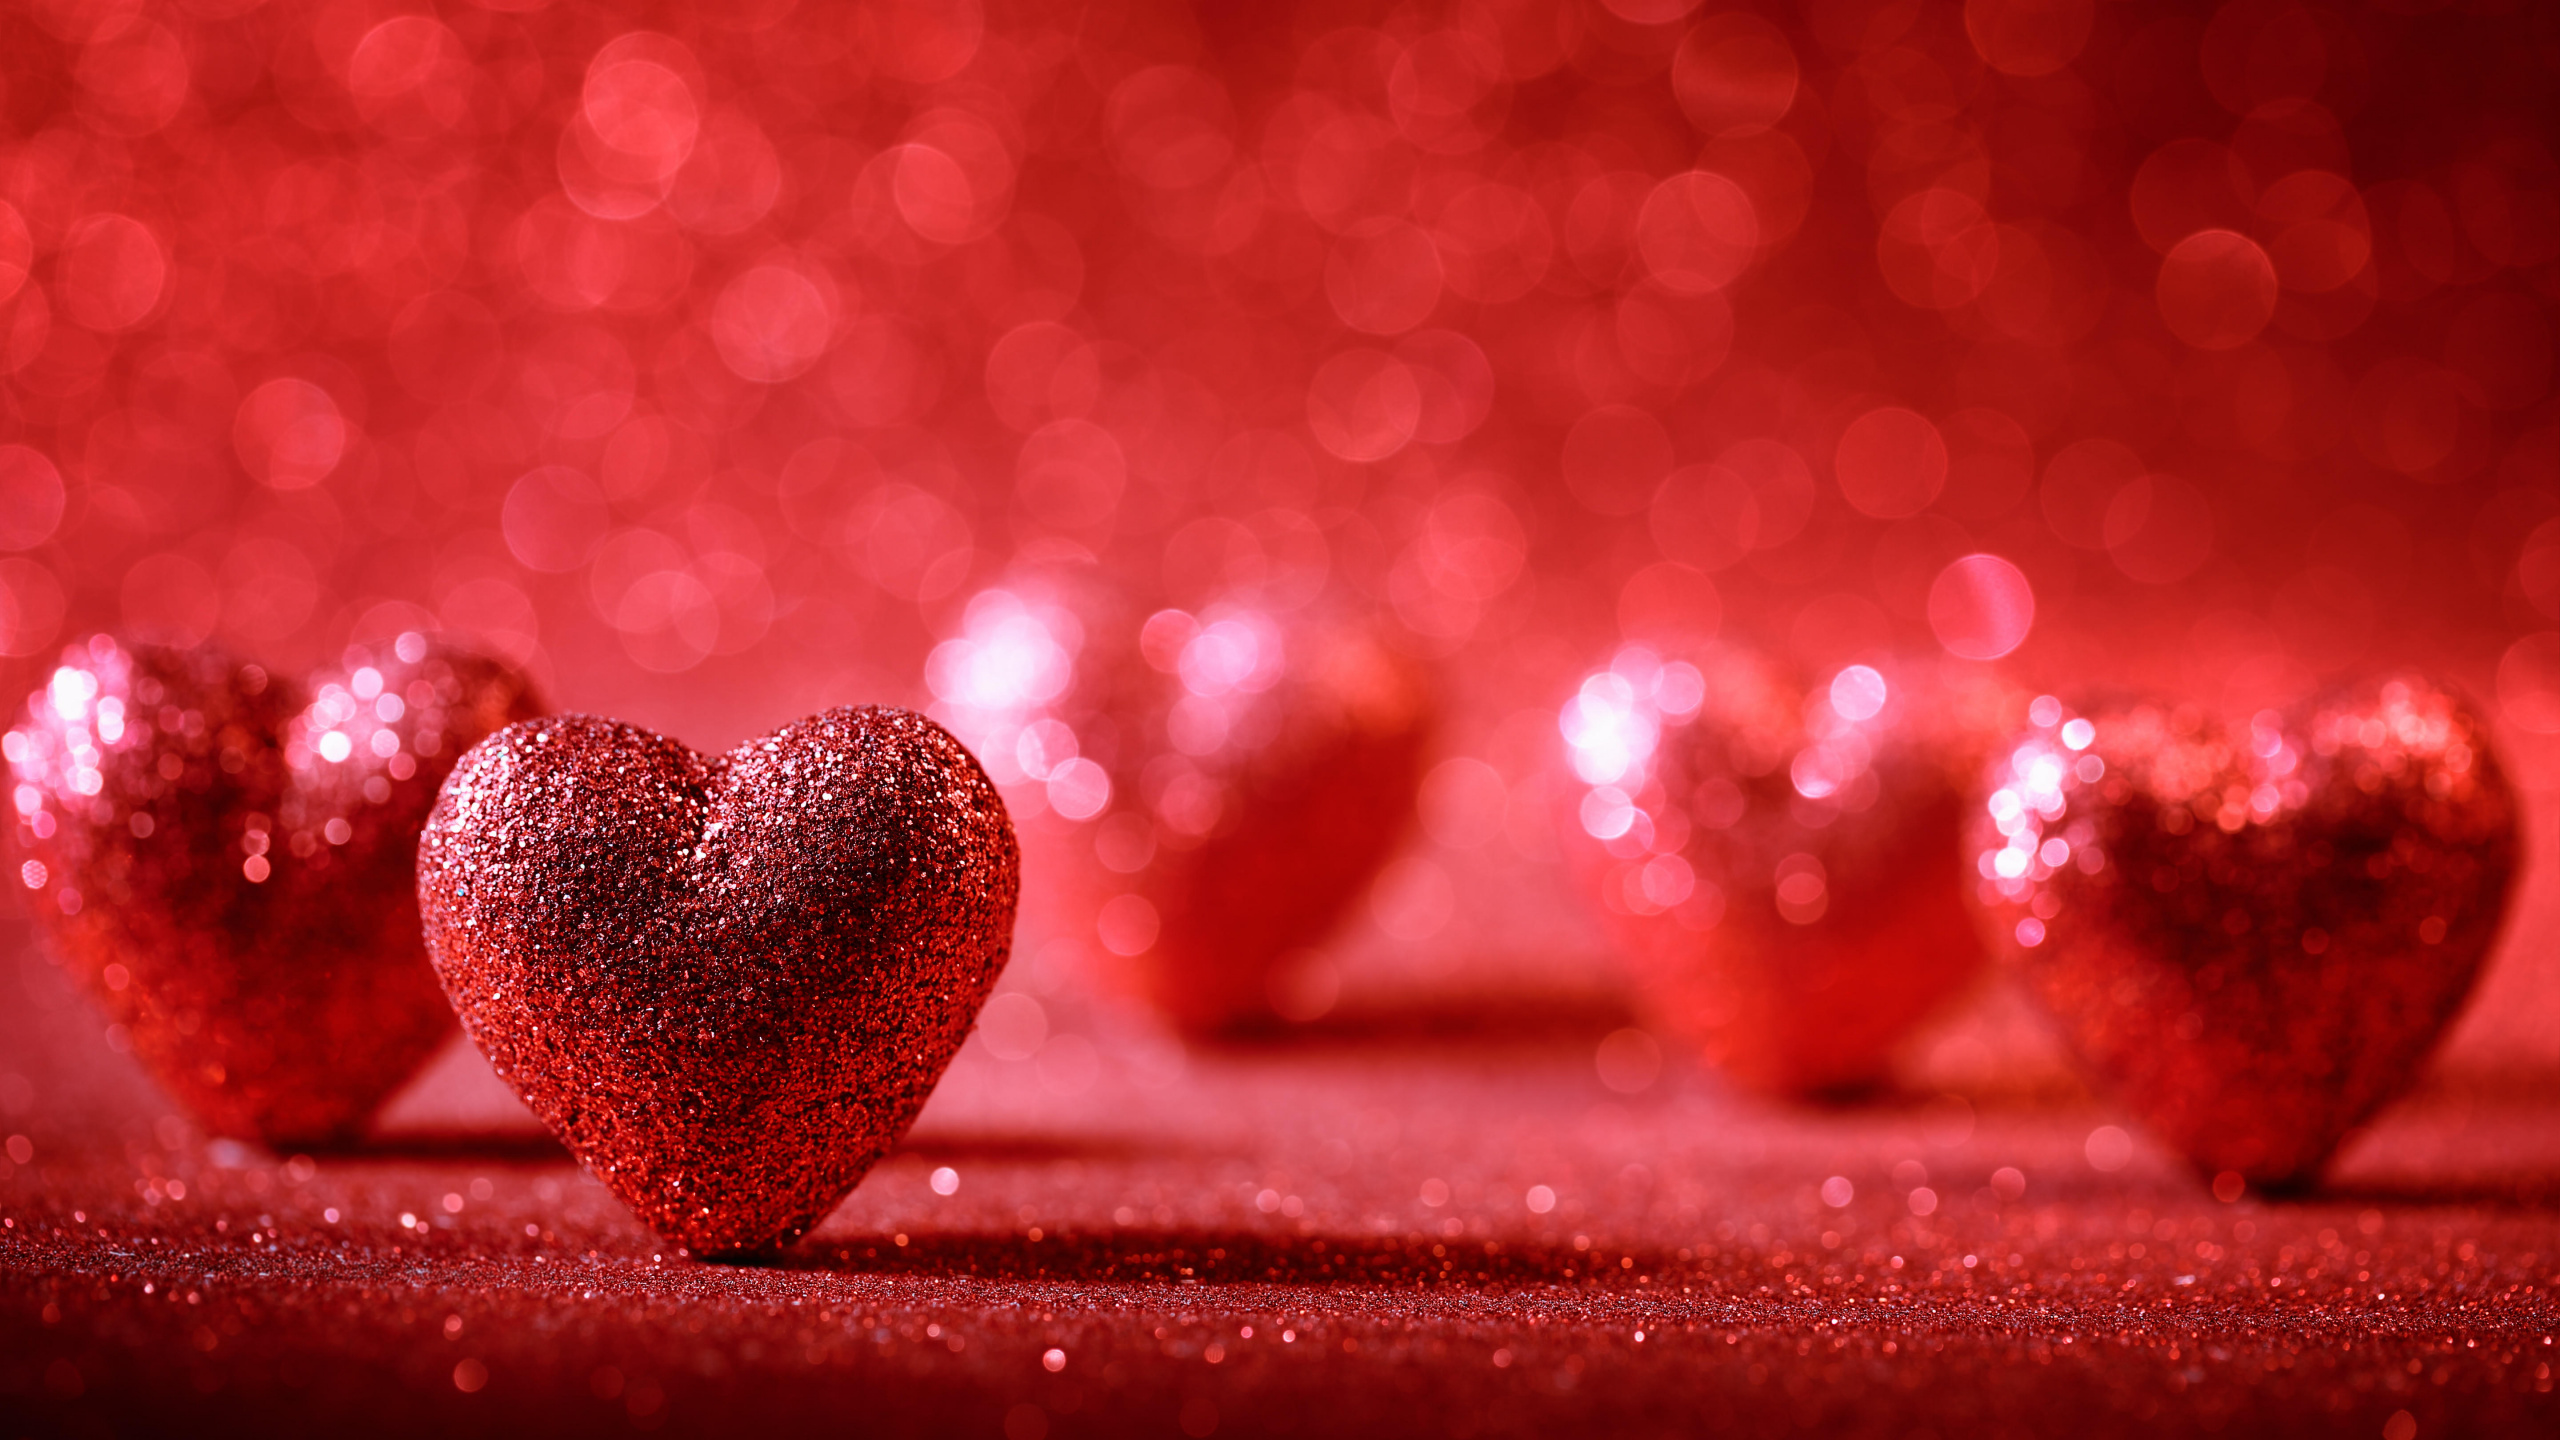 el Día de San Valentín, Coraz, Rojo, Amor, Romanticismo. Wallpaper in 2560x1440 Resolution